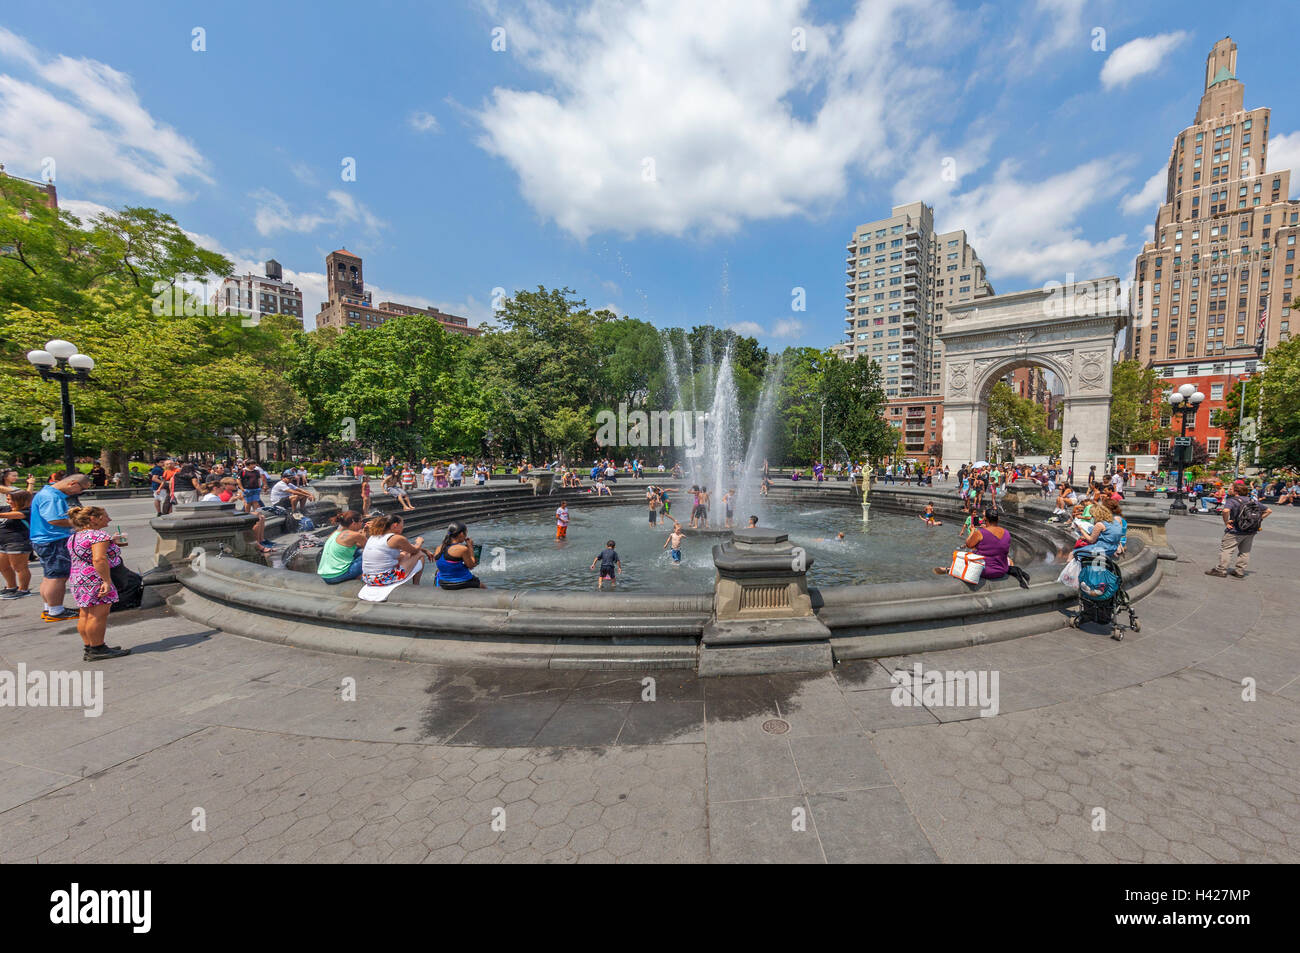 Washington Square Park Arco nella città di New York e persone che giocano nella fontana di acqua. Foto Stock